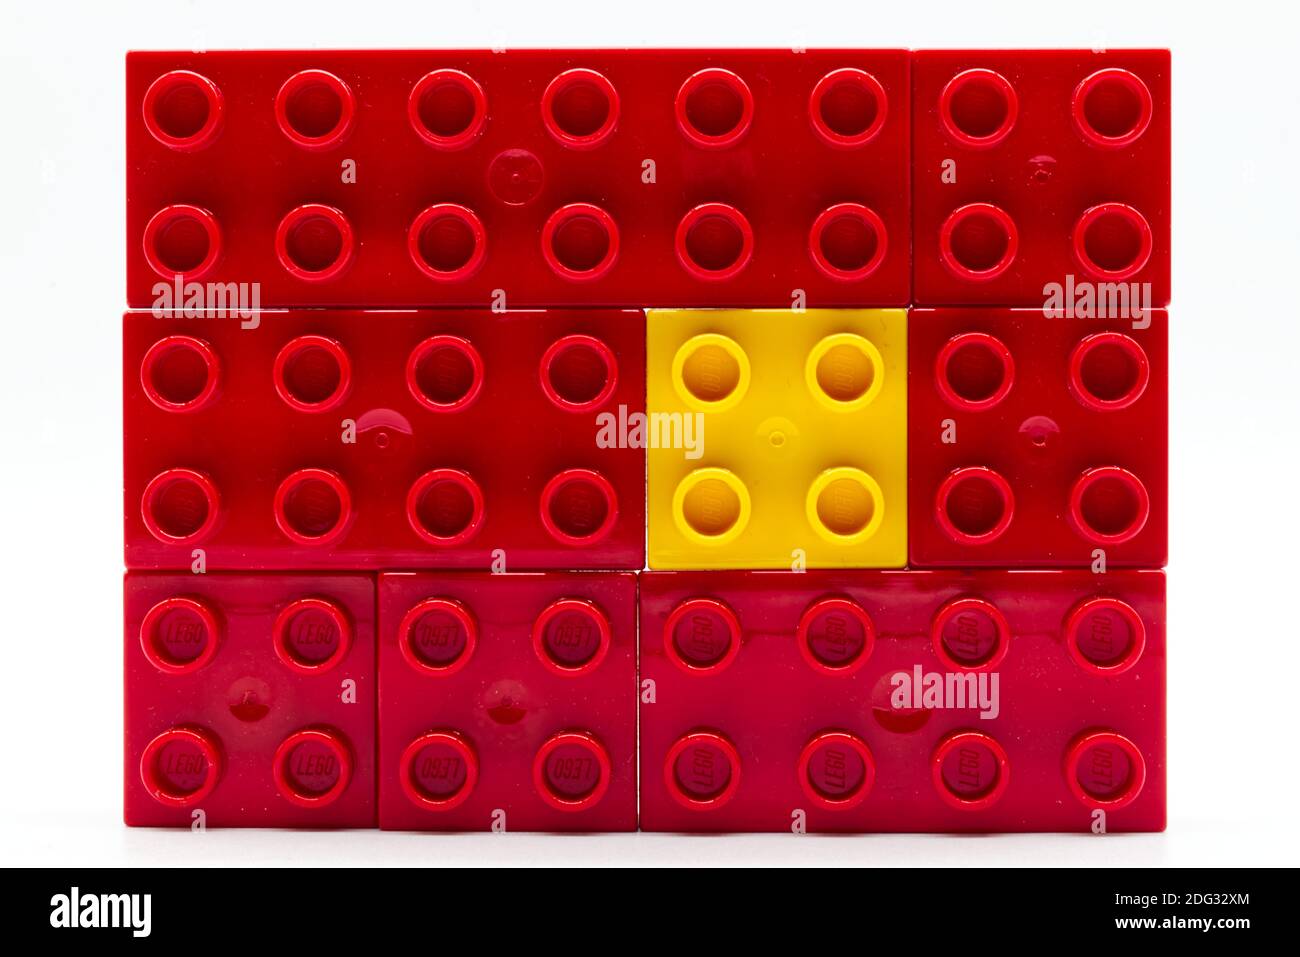 Gelber Lego-Baustein aus Kunststoff, umgeben von roten. Isolation und  Diversity Konzept Stockfotografie - Alamy